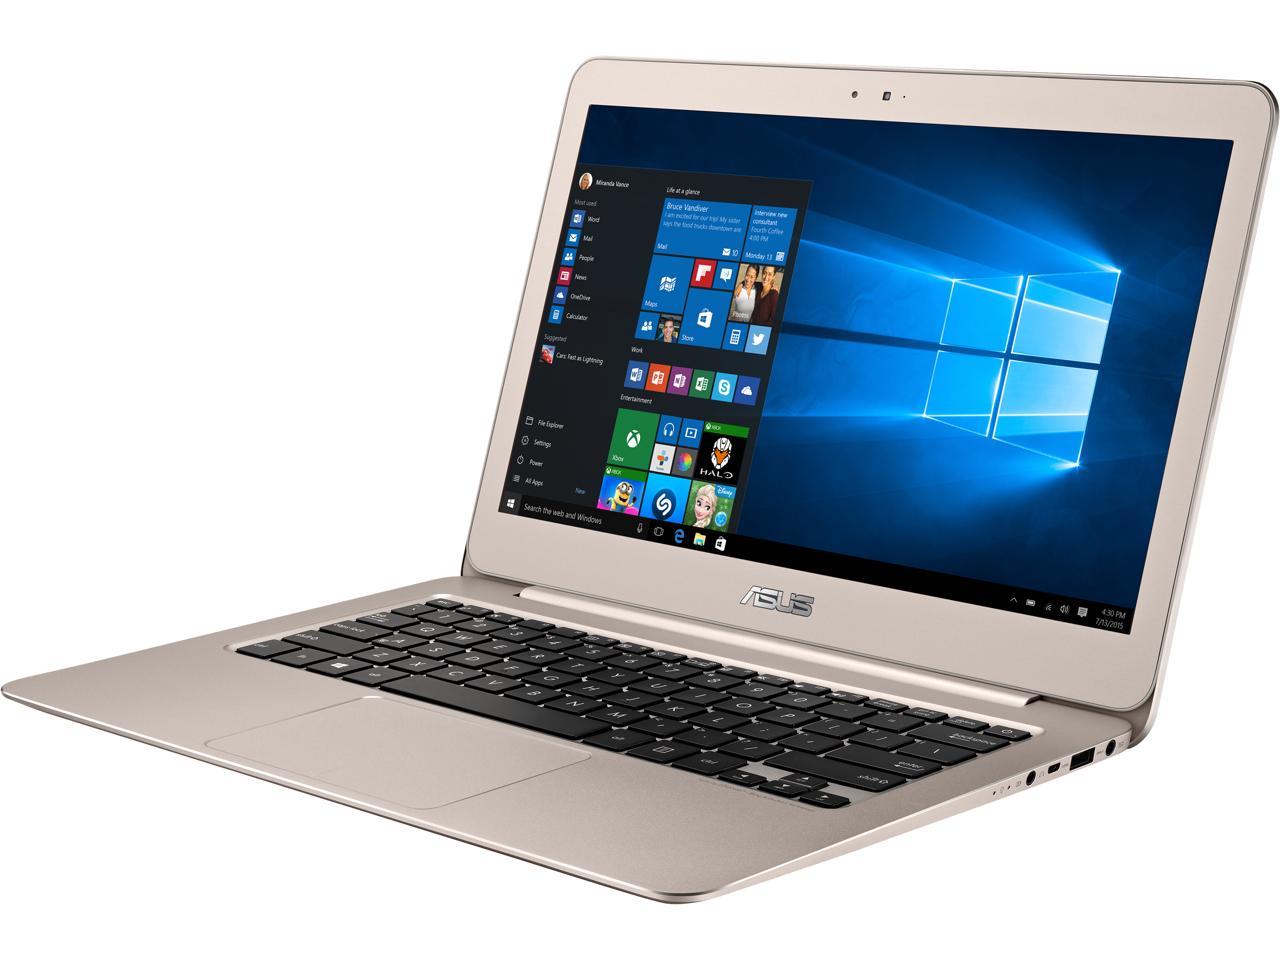 ASUS Zenbook UX305UA-NH52 Intel Core i5 6200U (2.30 GHz) 8 GB 